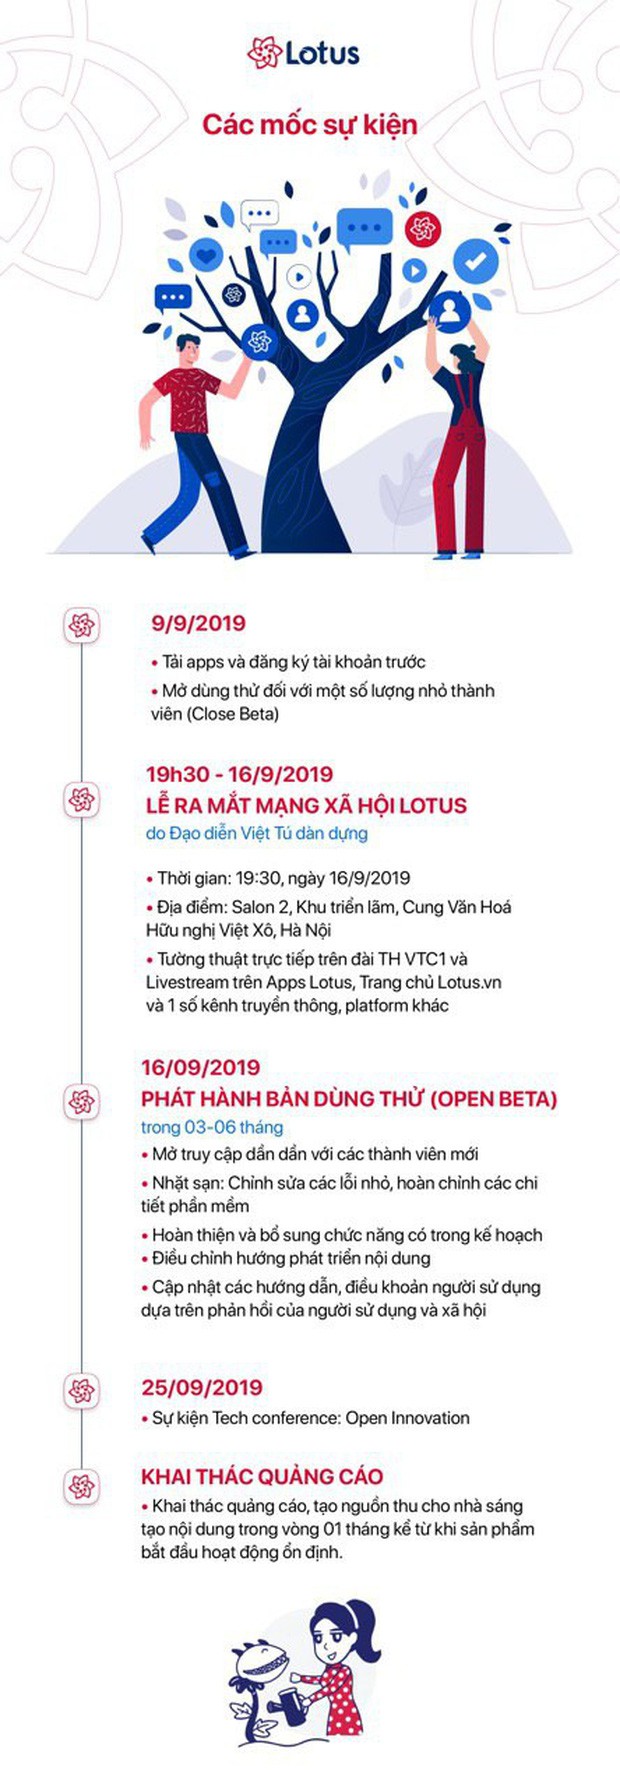 Lễ ra mắt MXH Lotus chính là sự kiện hot nhất tháng 9 này: Gây bão từ ngay chiếc thiệp mời ma thuật, dự kiến quy tụ hàng trăm celebs, creators hàng đầu Việt Nam - Ảnh 11.